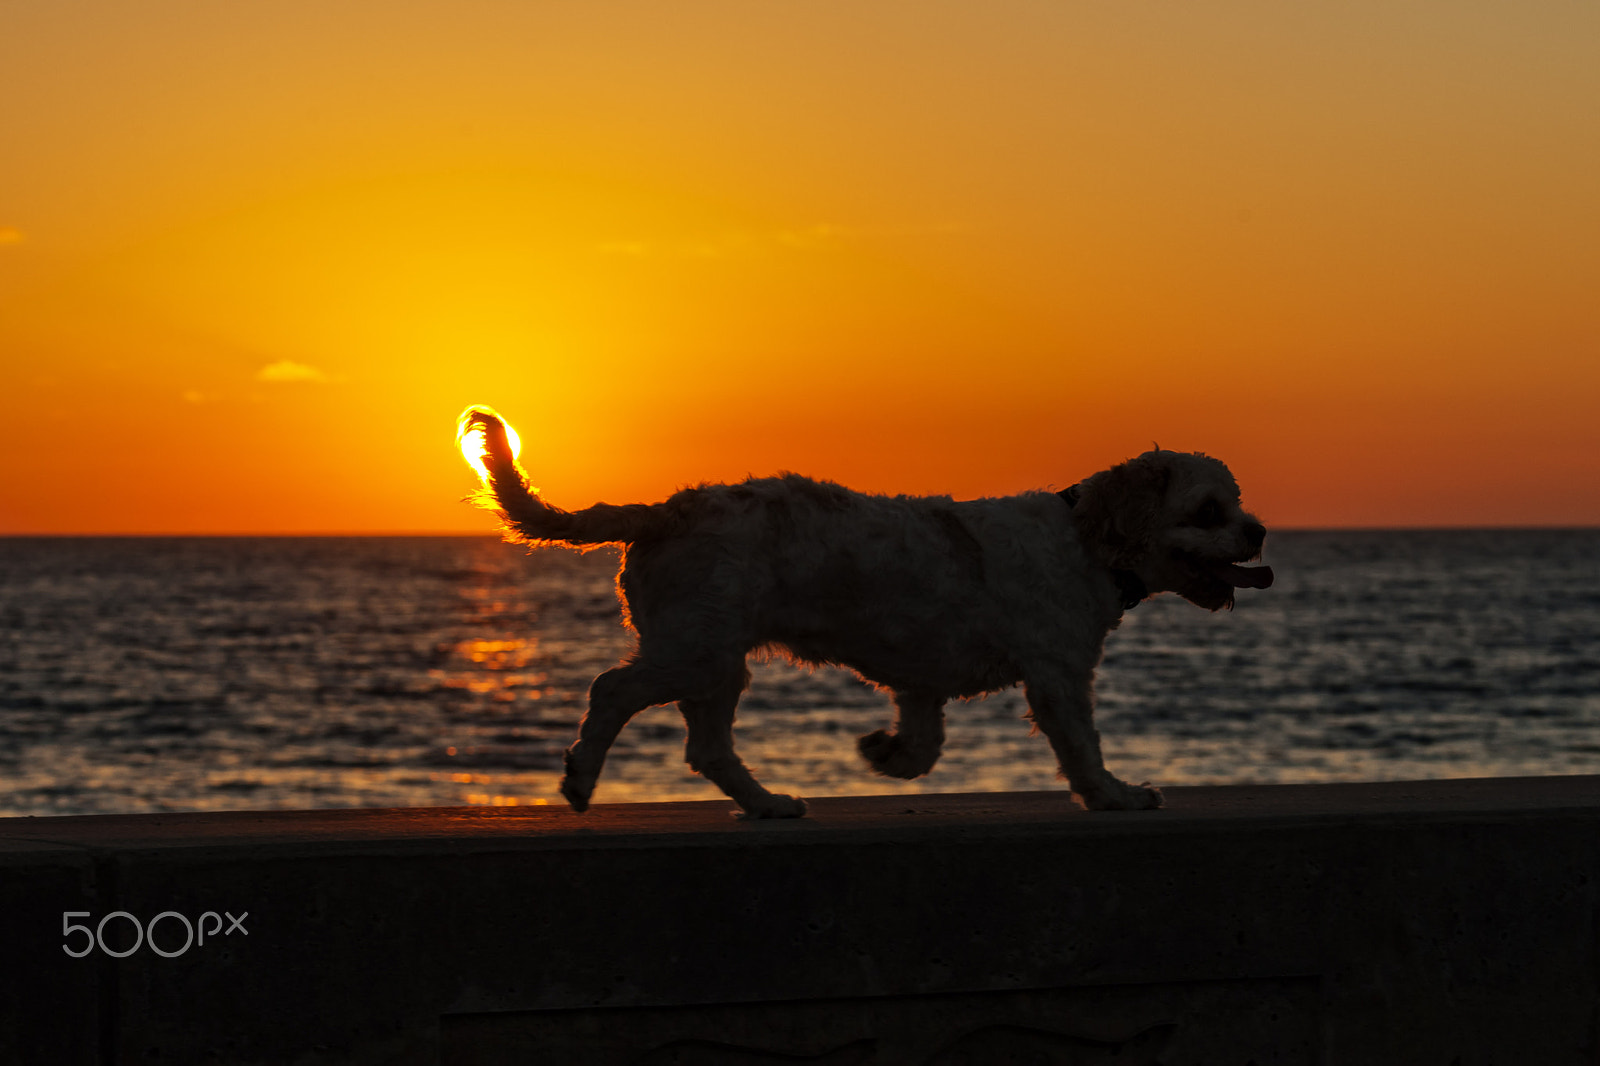 Nikon D700 + Nikon AF-S Nikkor 80-400mm F4.5-5.6G ED VR sample photo. Dog at sunset in carlsbad photography